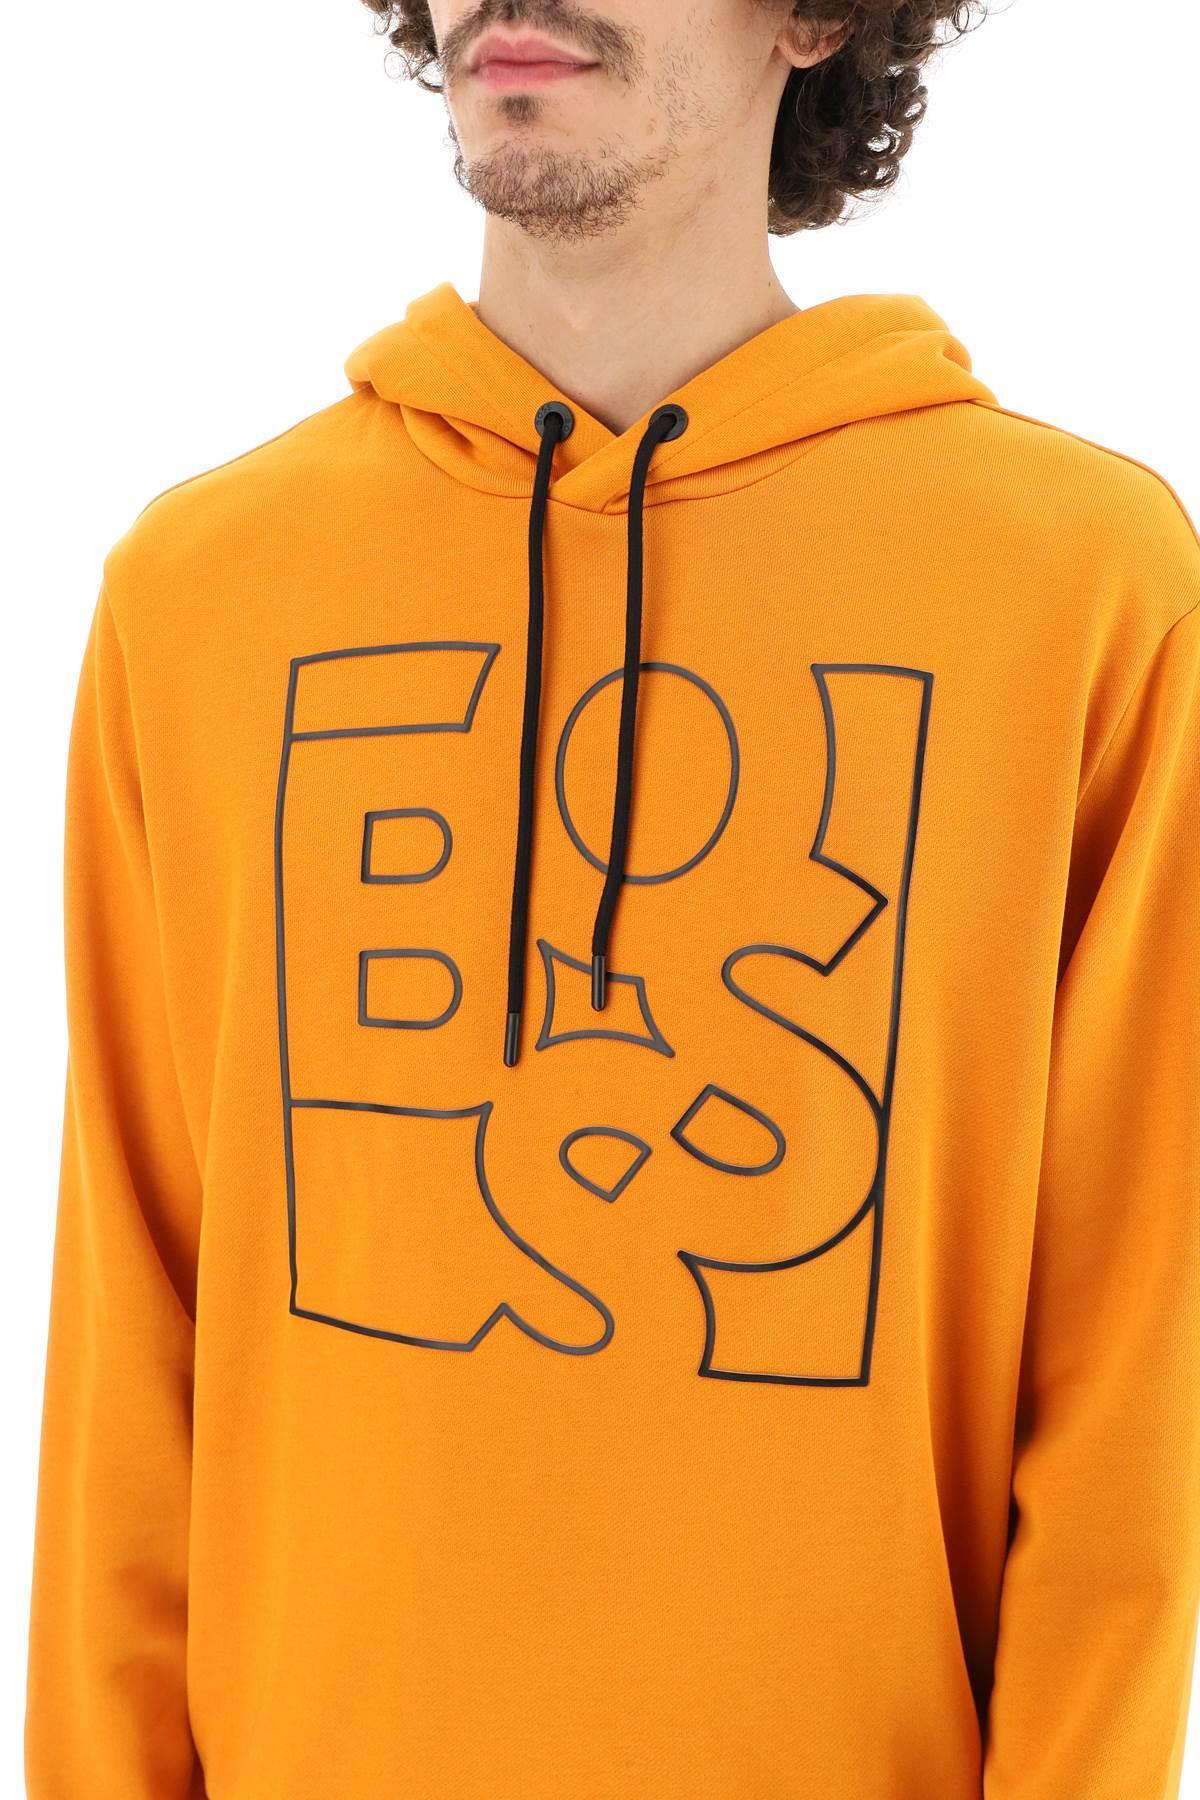 BOSS by HUGO BOSS Shaken Logo Hoodie in Orange | Lyst